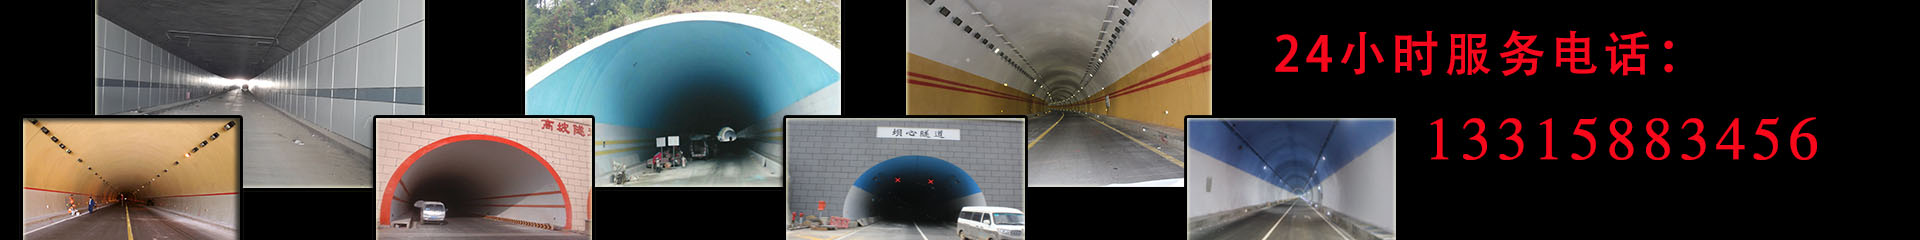 隧道腻子,隧道瓷砖,隧道刮子施工,隧道贴瓷砖队伍-承德科源隧道防火涂料公司